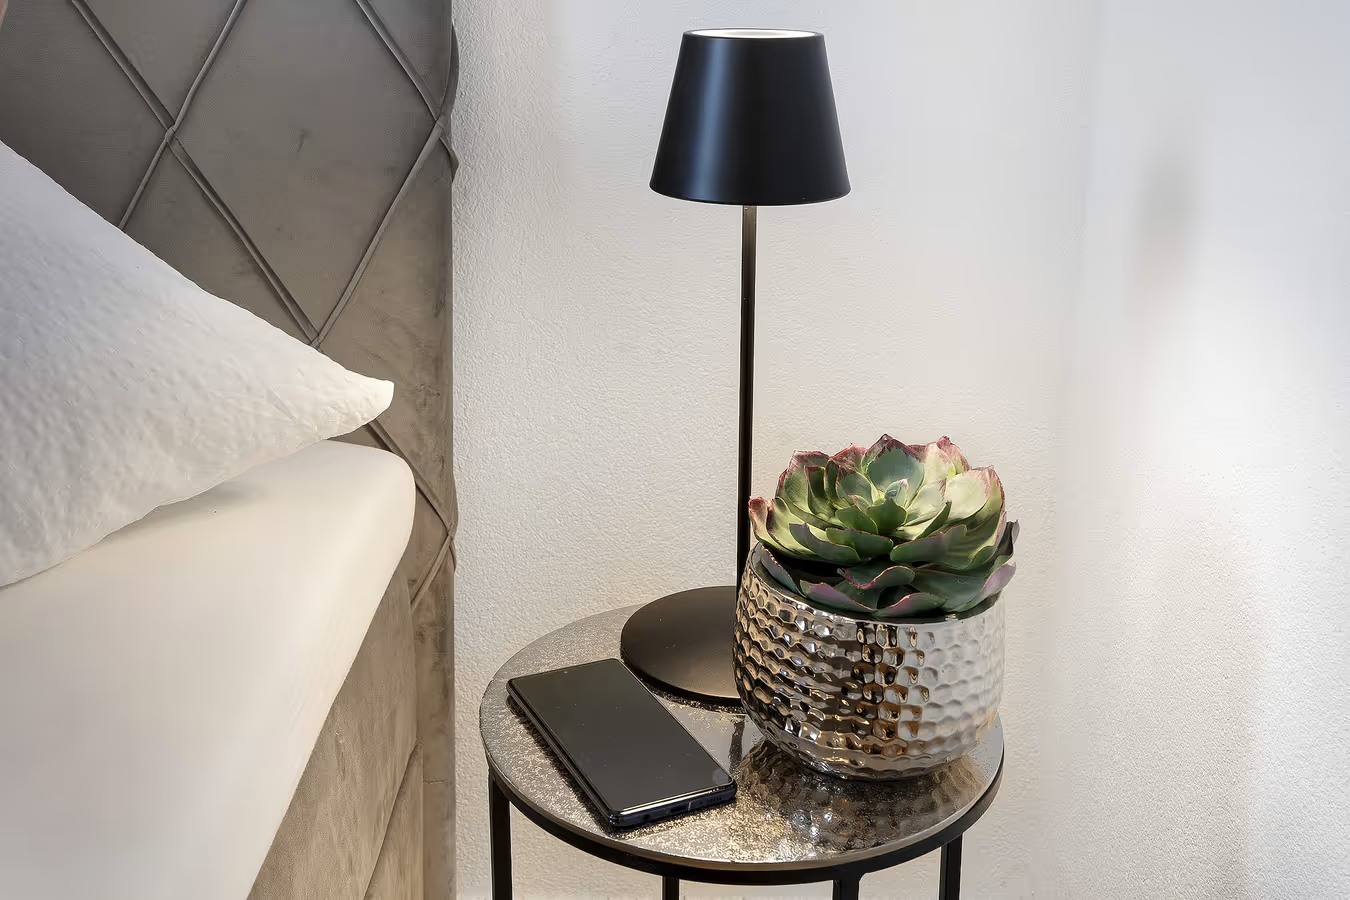 Nachttisch mid led lampe smartphone und kleiner pflanze